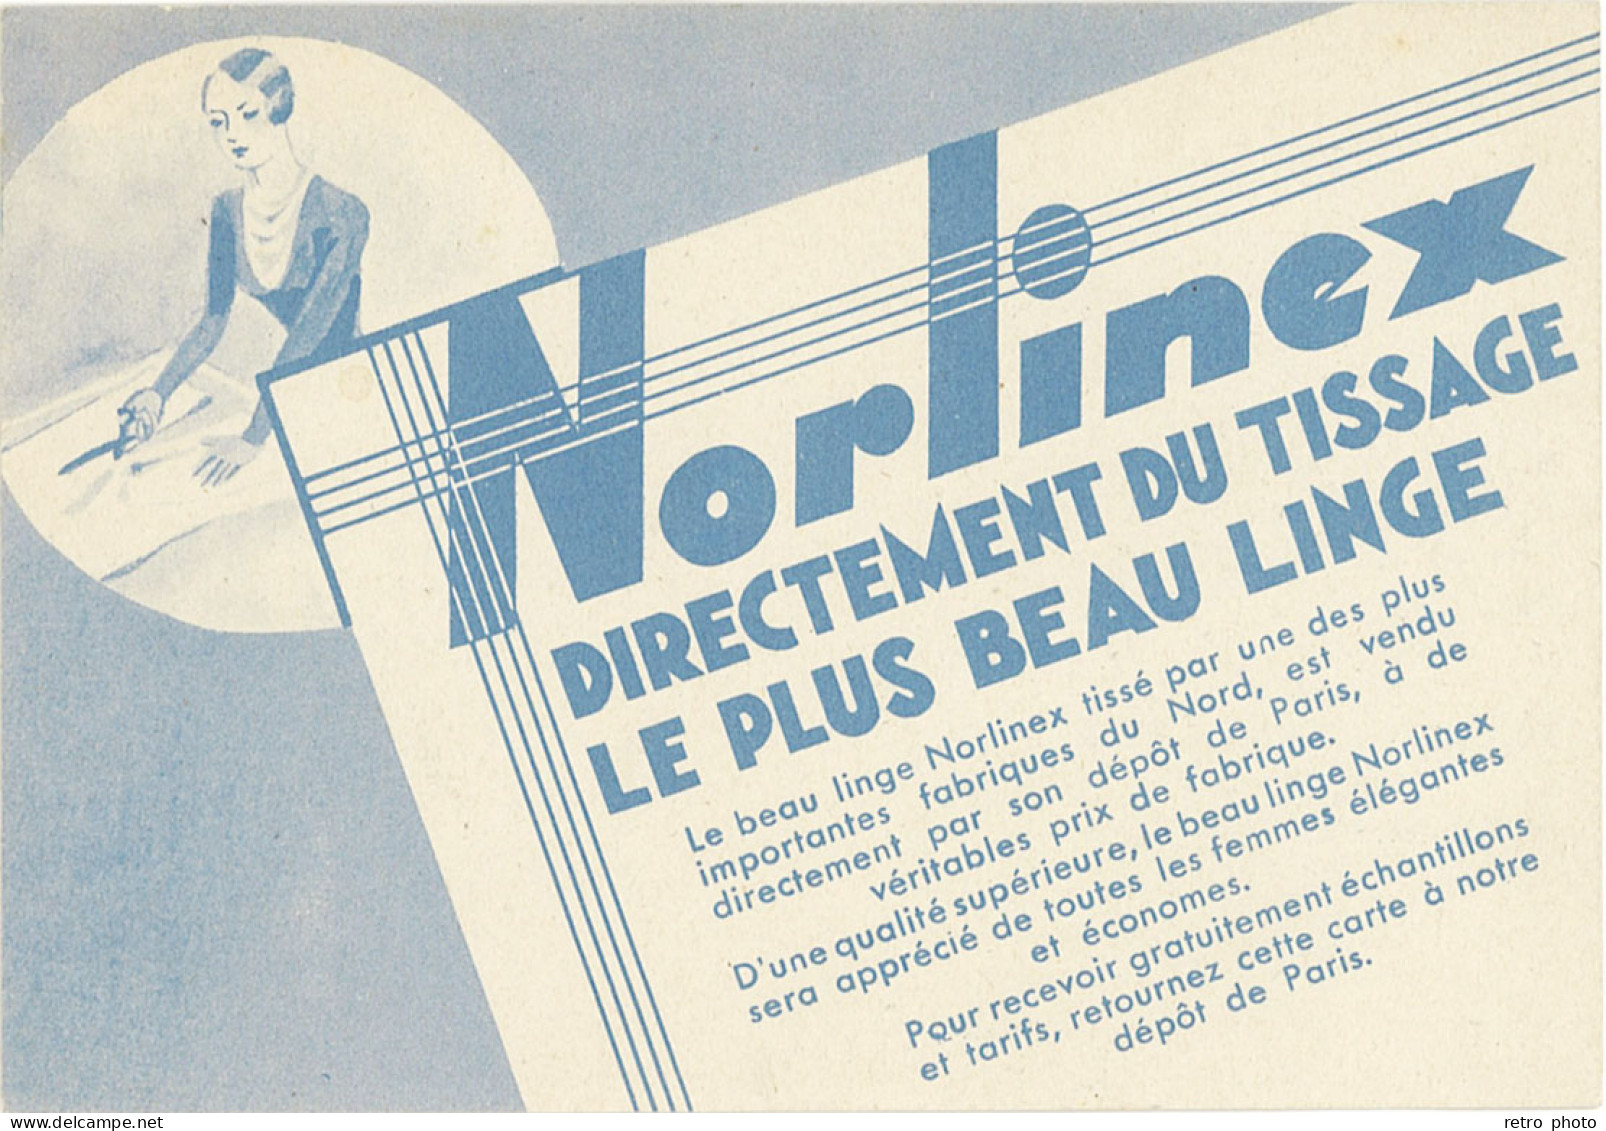 TB Norlinex Directement Du Tissage, Le Plus Beau Linge - Advertising